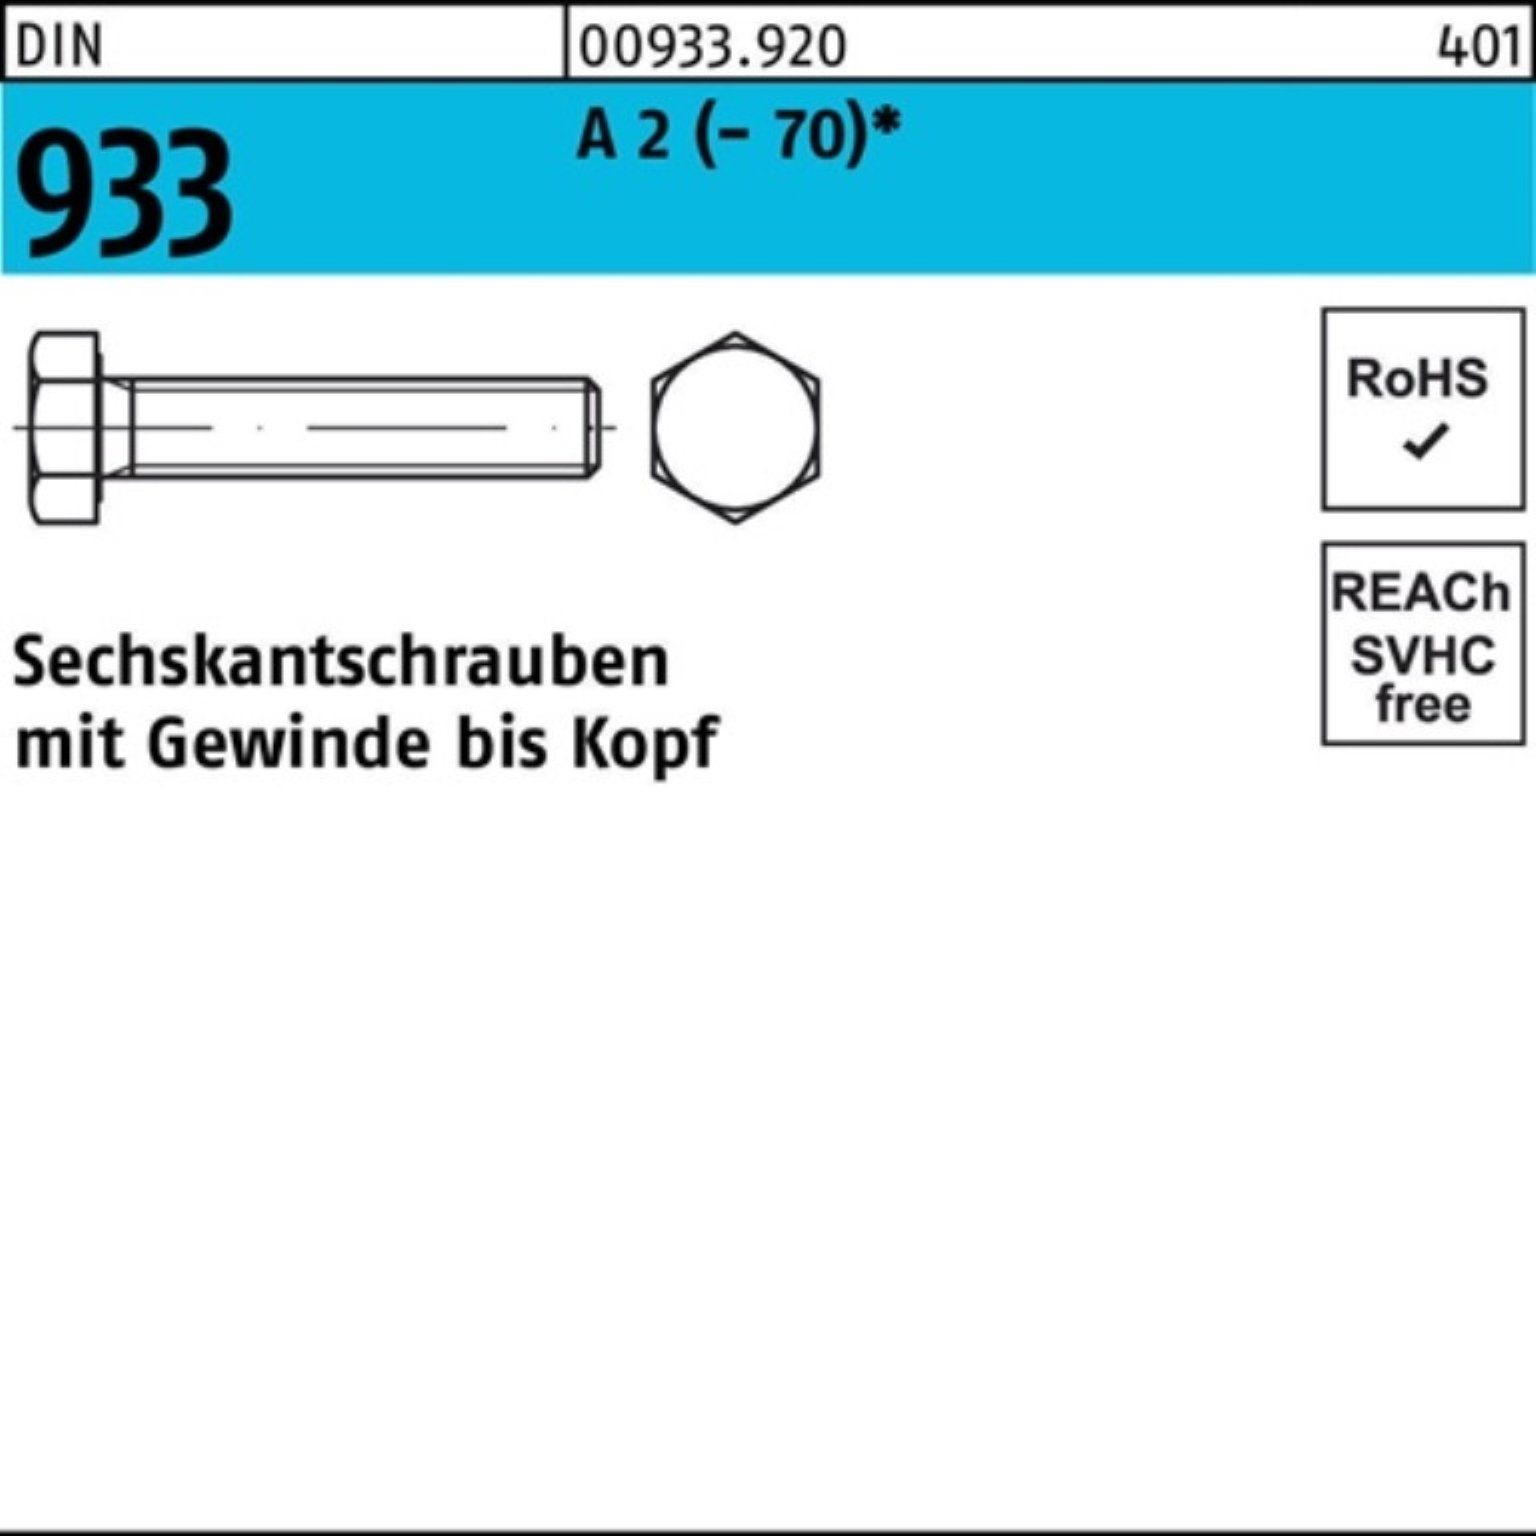 Reyher Sechskantschraube 200er 16 D 933 DIN 2 200 (70) Sechskantschraube VG Stück Pack A M4x